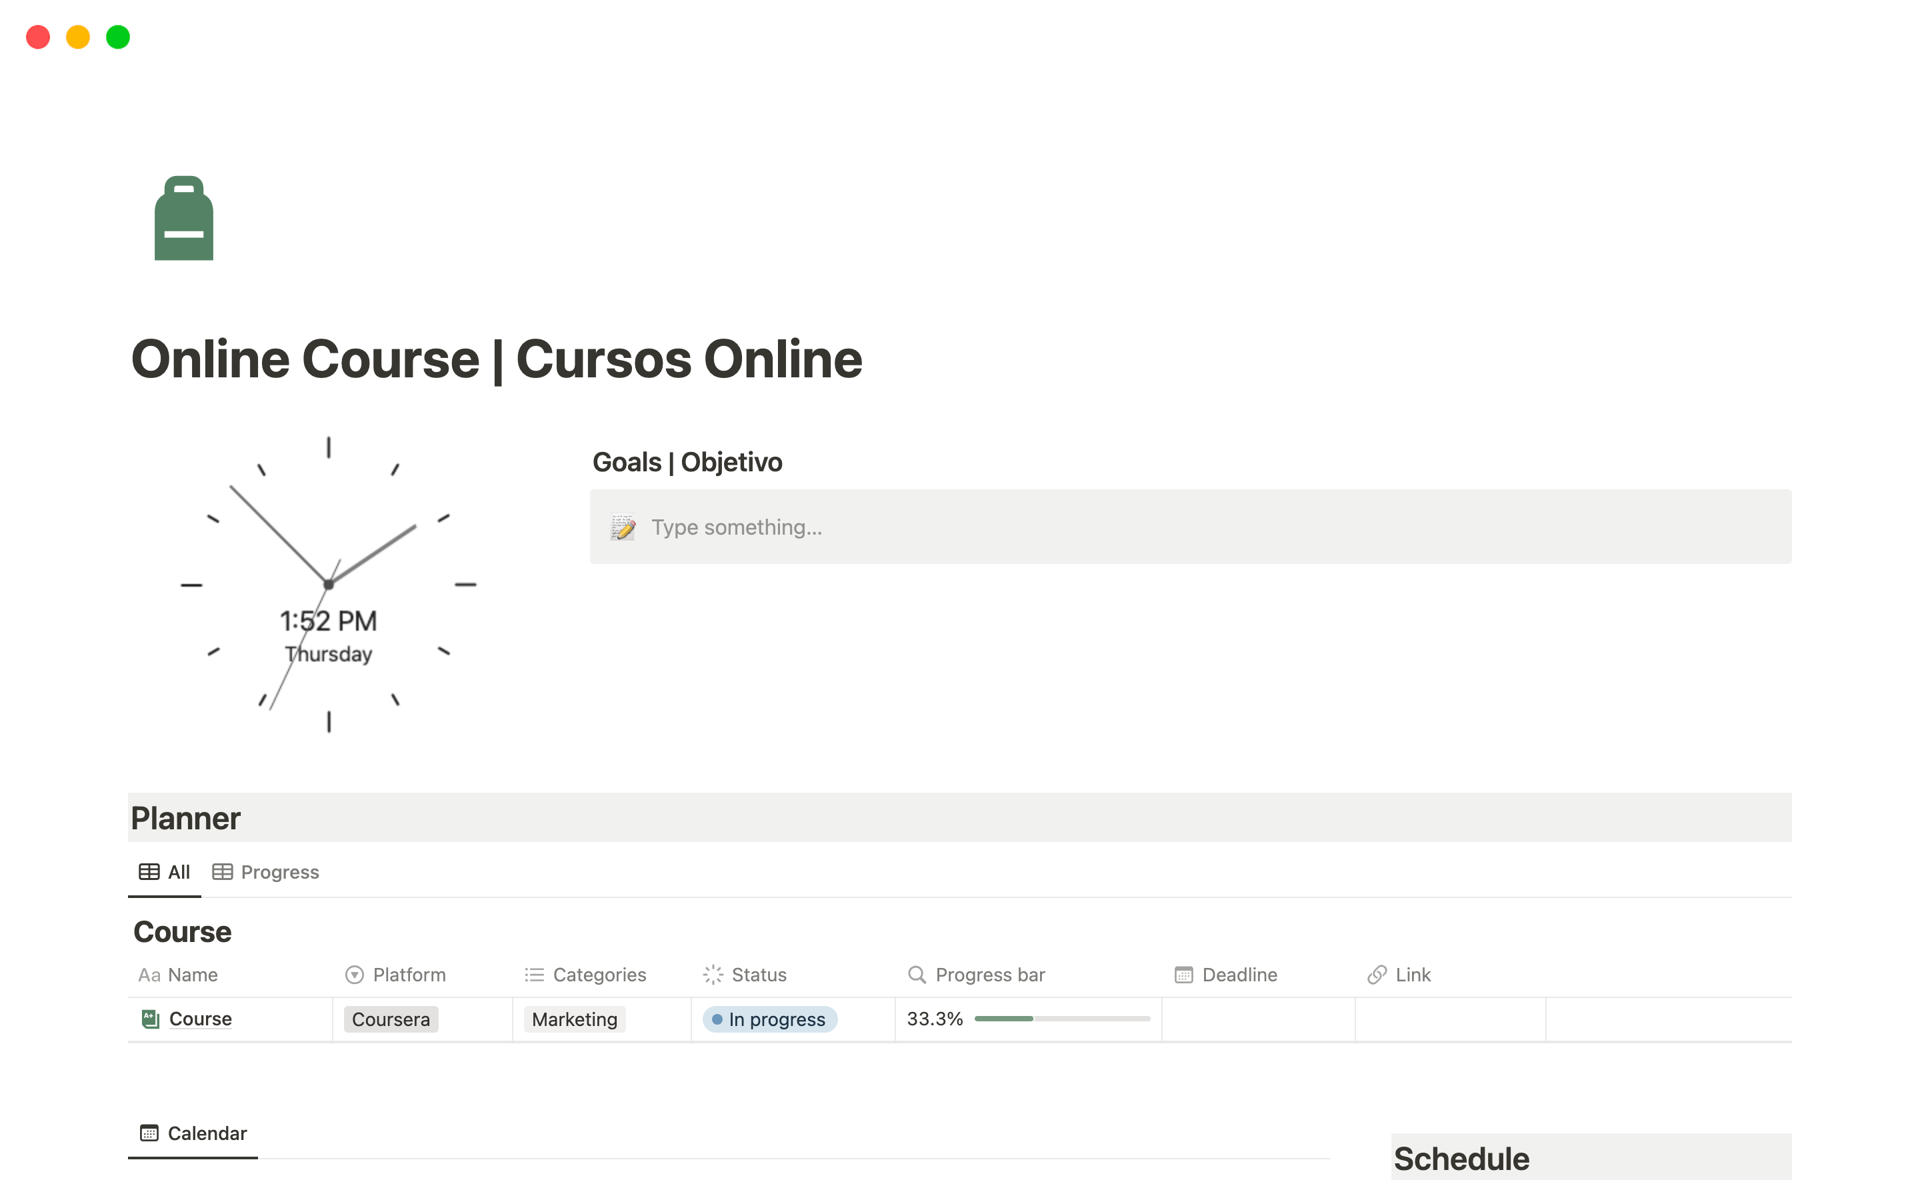 Online Course | Cursos Onlineのテンプレートのプレビュー